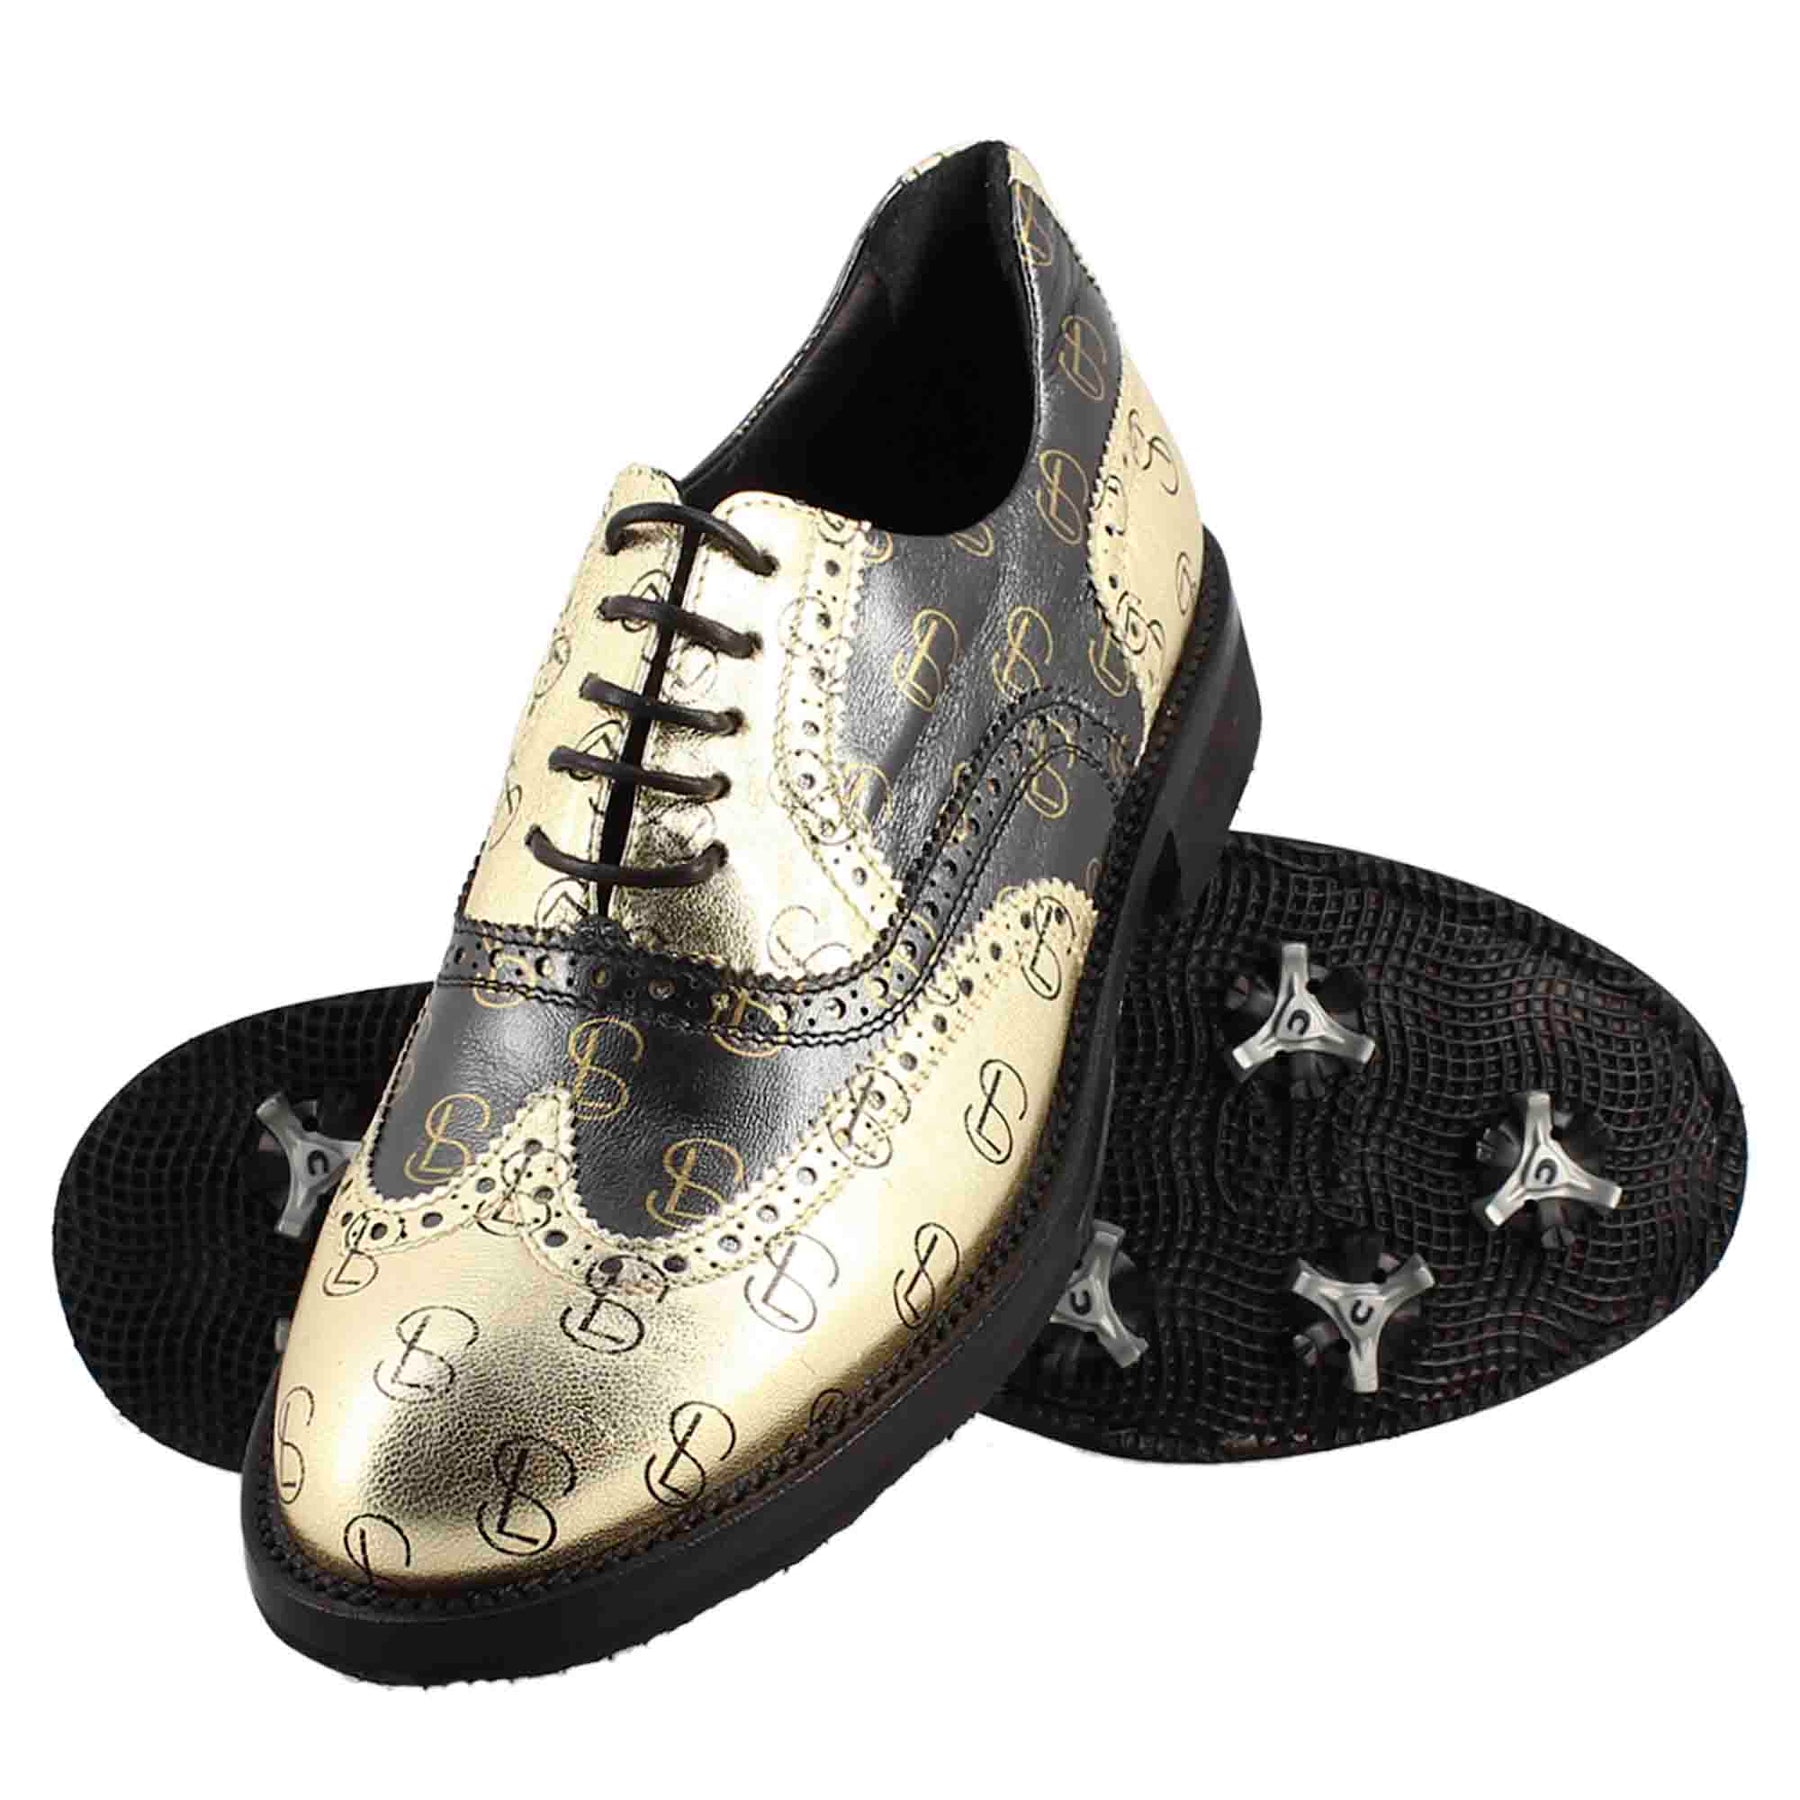 Chaussures de golf en cuir pleine fleur bicolore noir et or pour femme